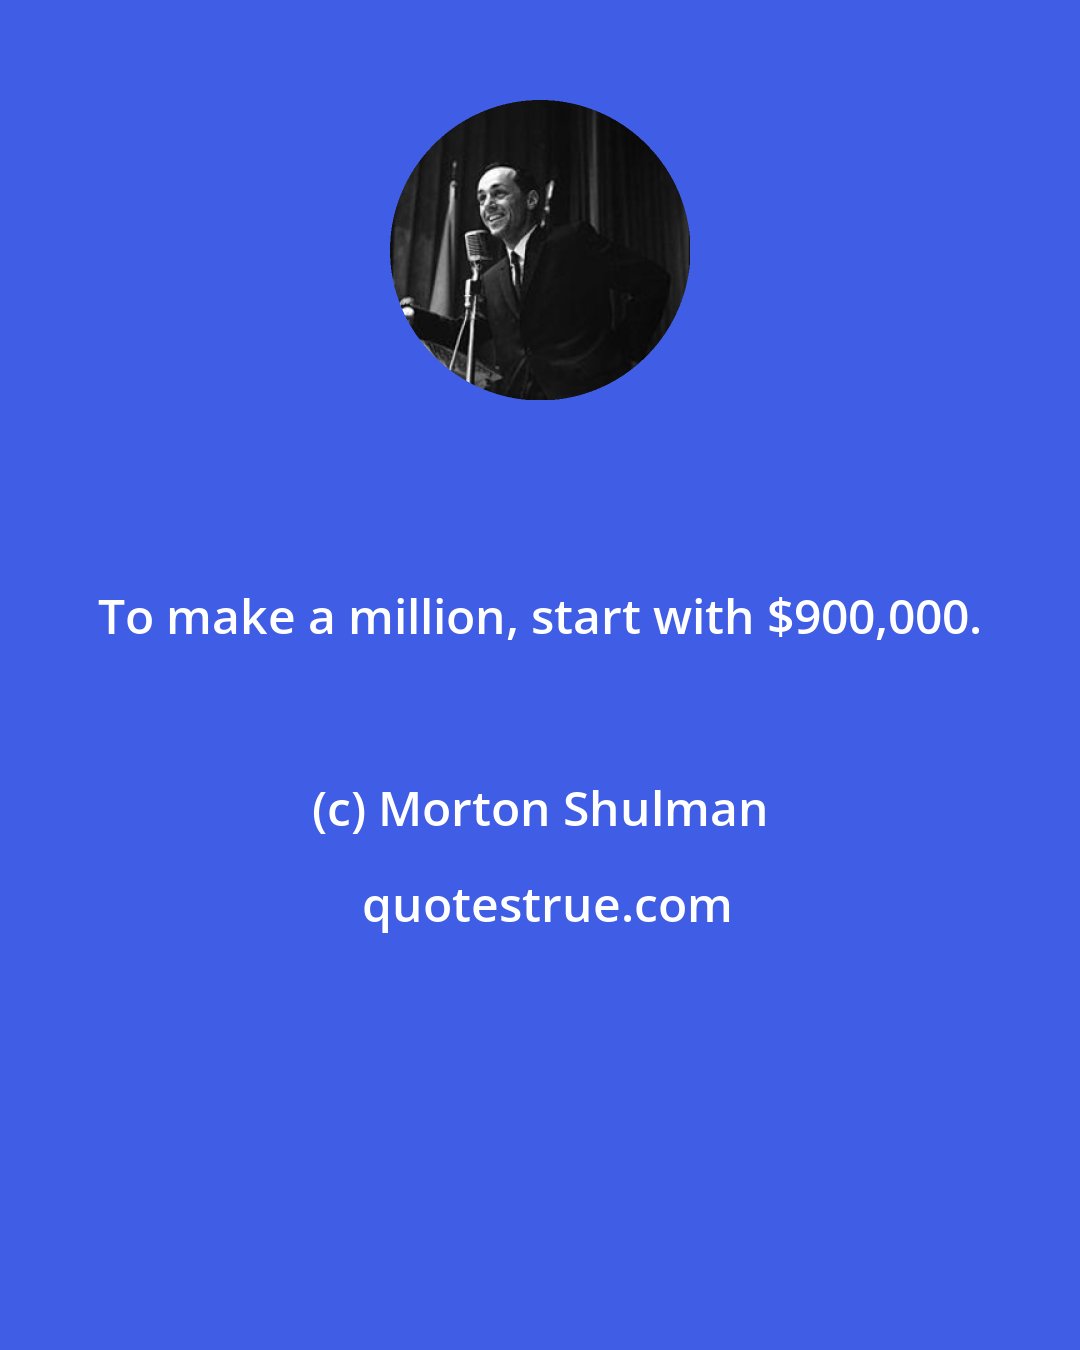 Morton Shulman: To make a million, start with $900,000.